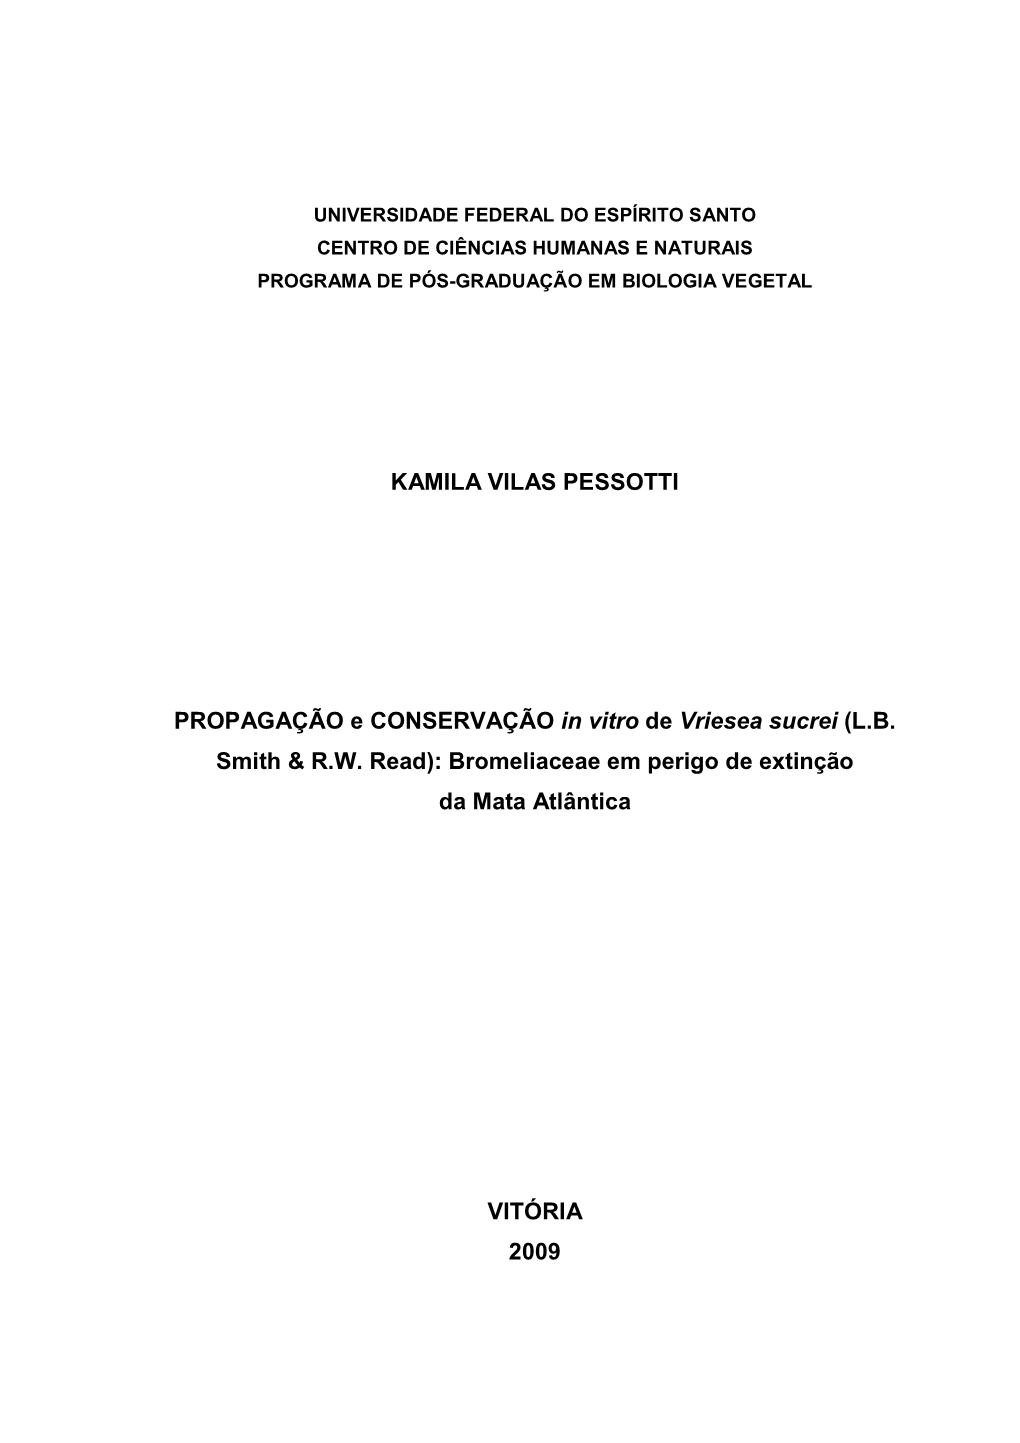 KAMILA VILAS PESSOTTI PROPAGAÇÃO E CONSERVAÇÃO in Vitro DE Vriesea Sucrei